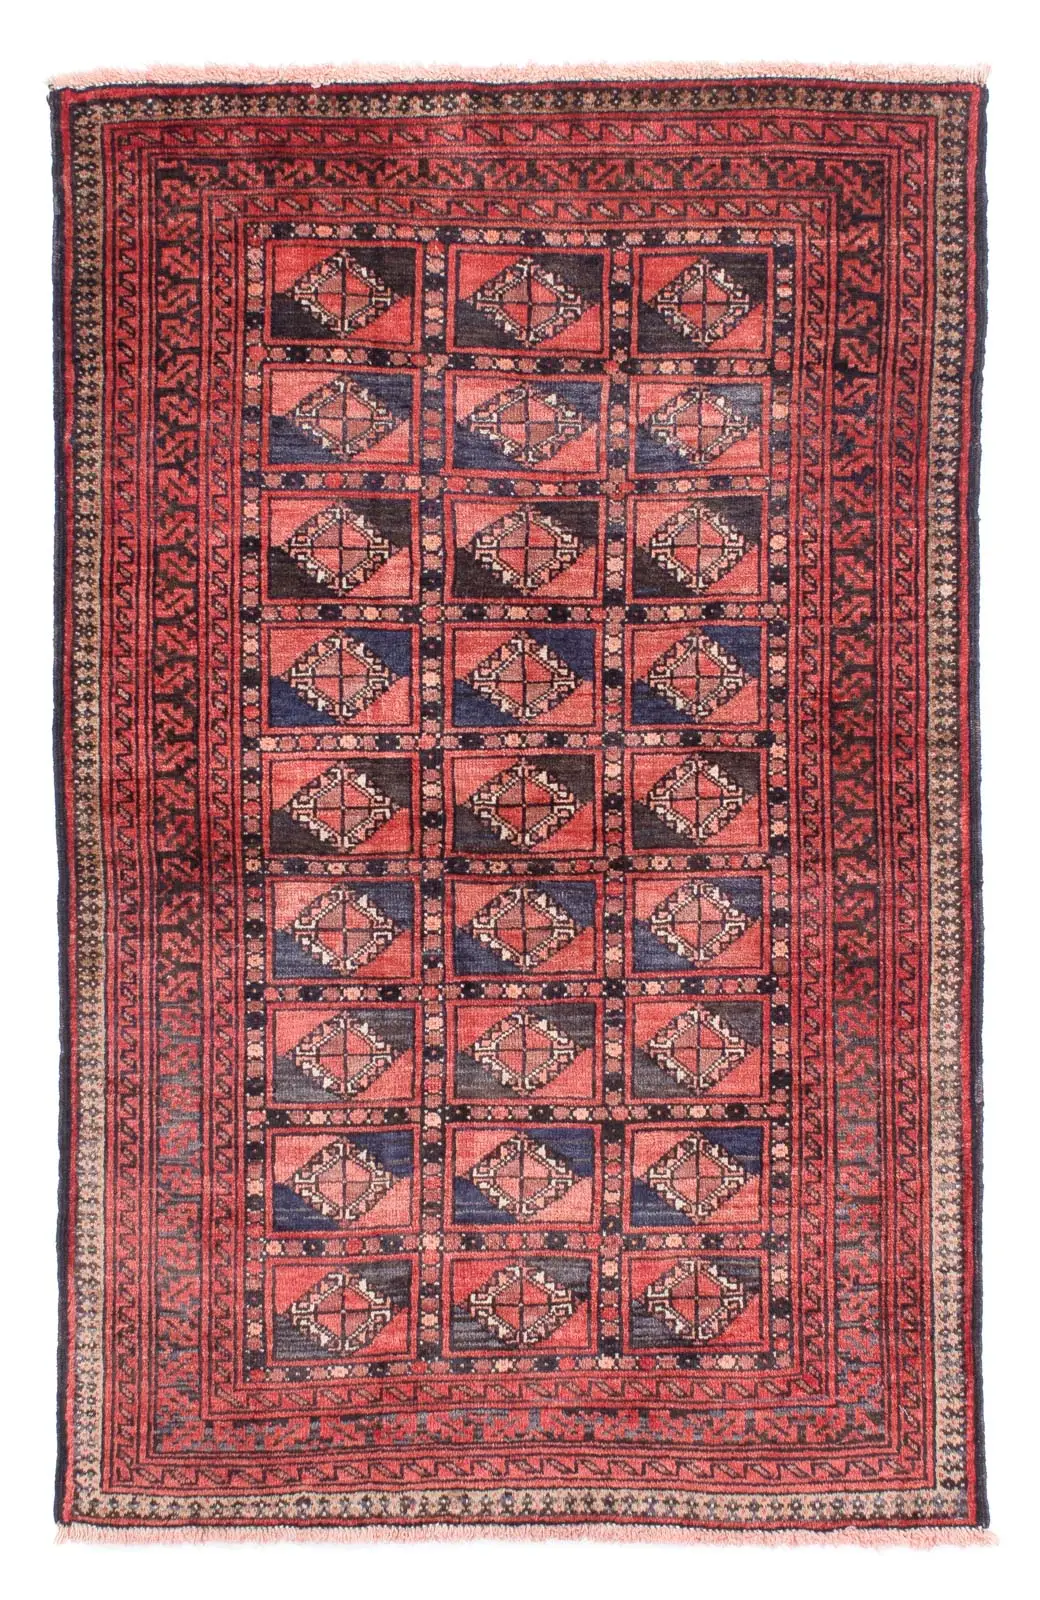 91 - Belutsch Teppich - x 151 cm hellrot